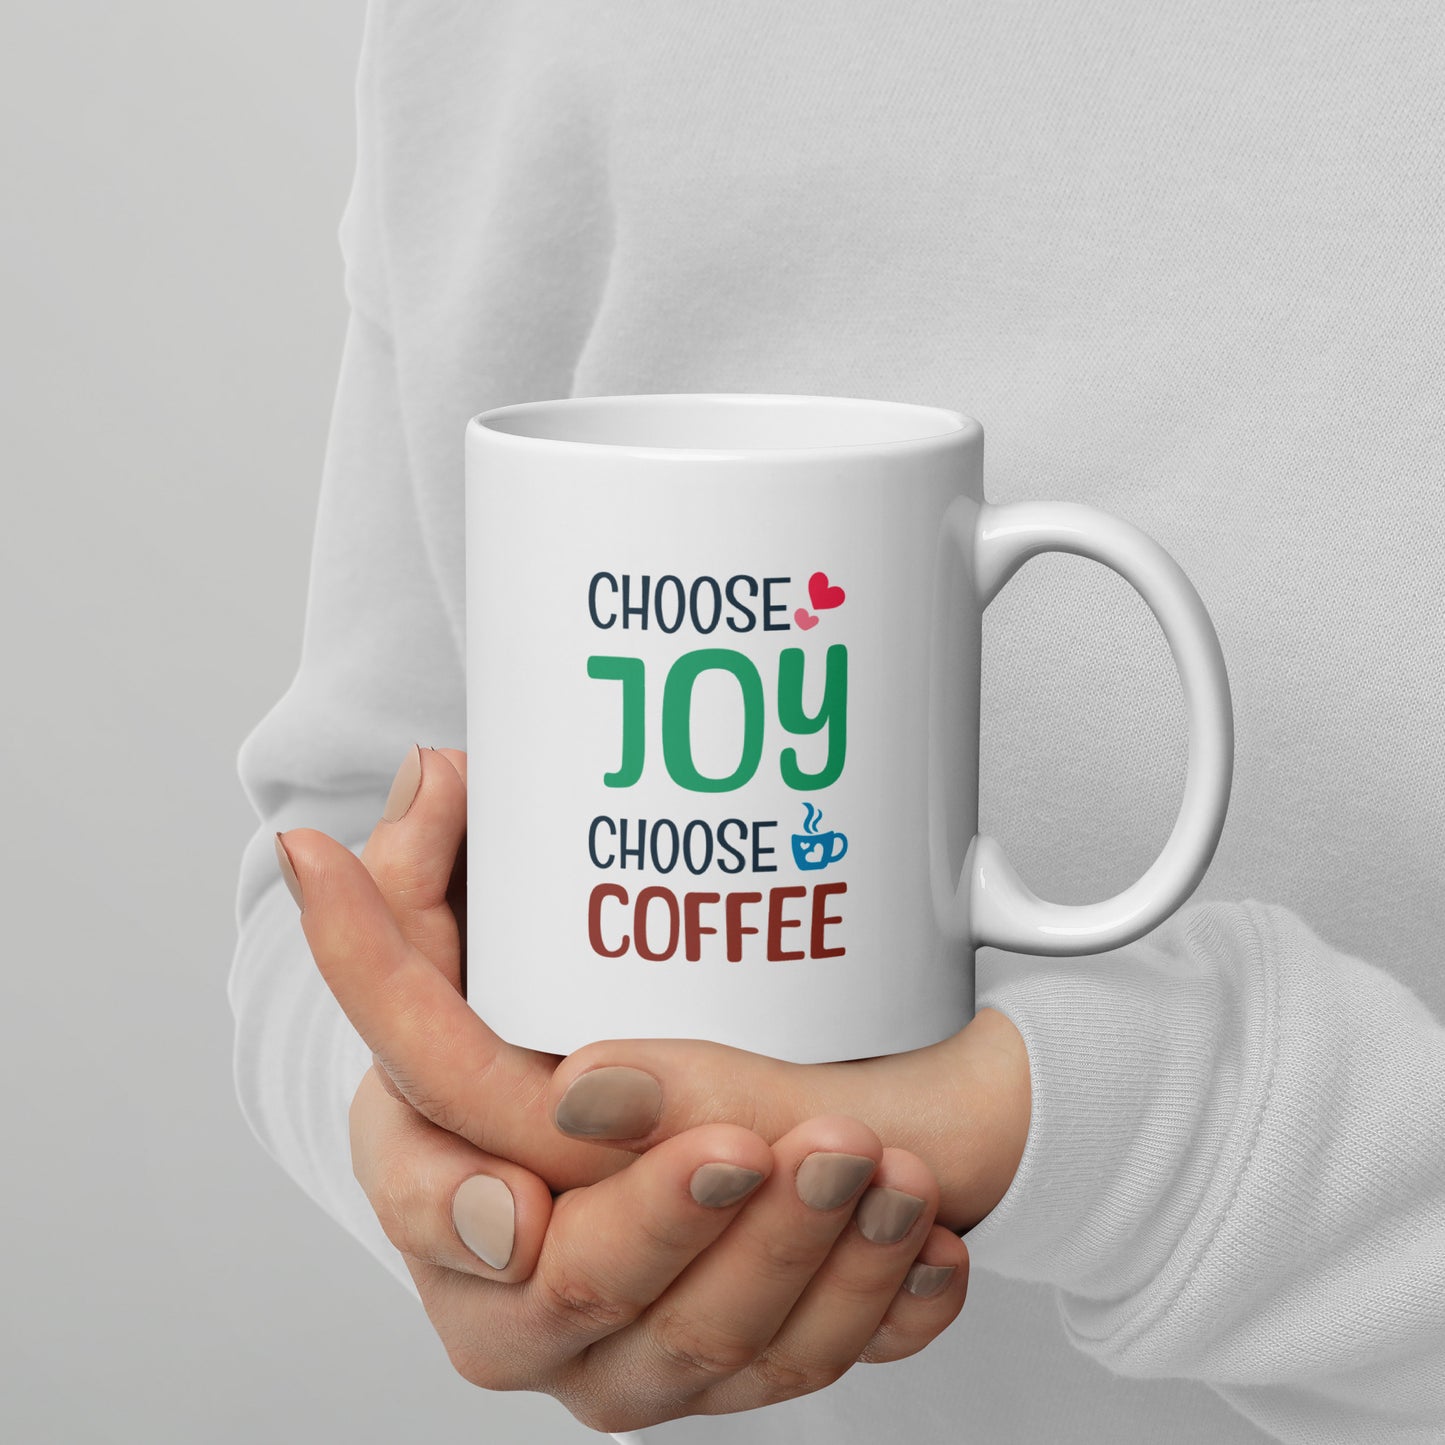 Choose coffee white ceramnic mug